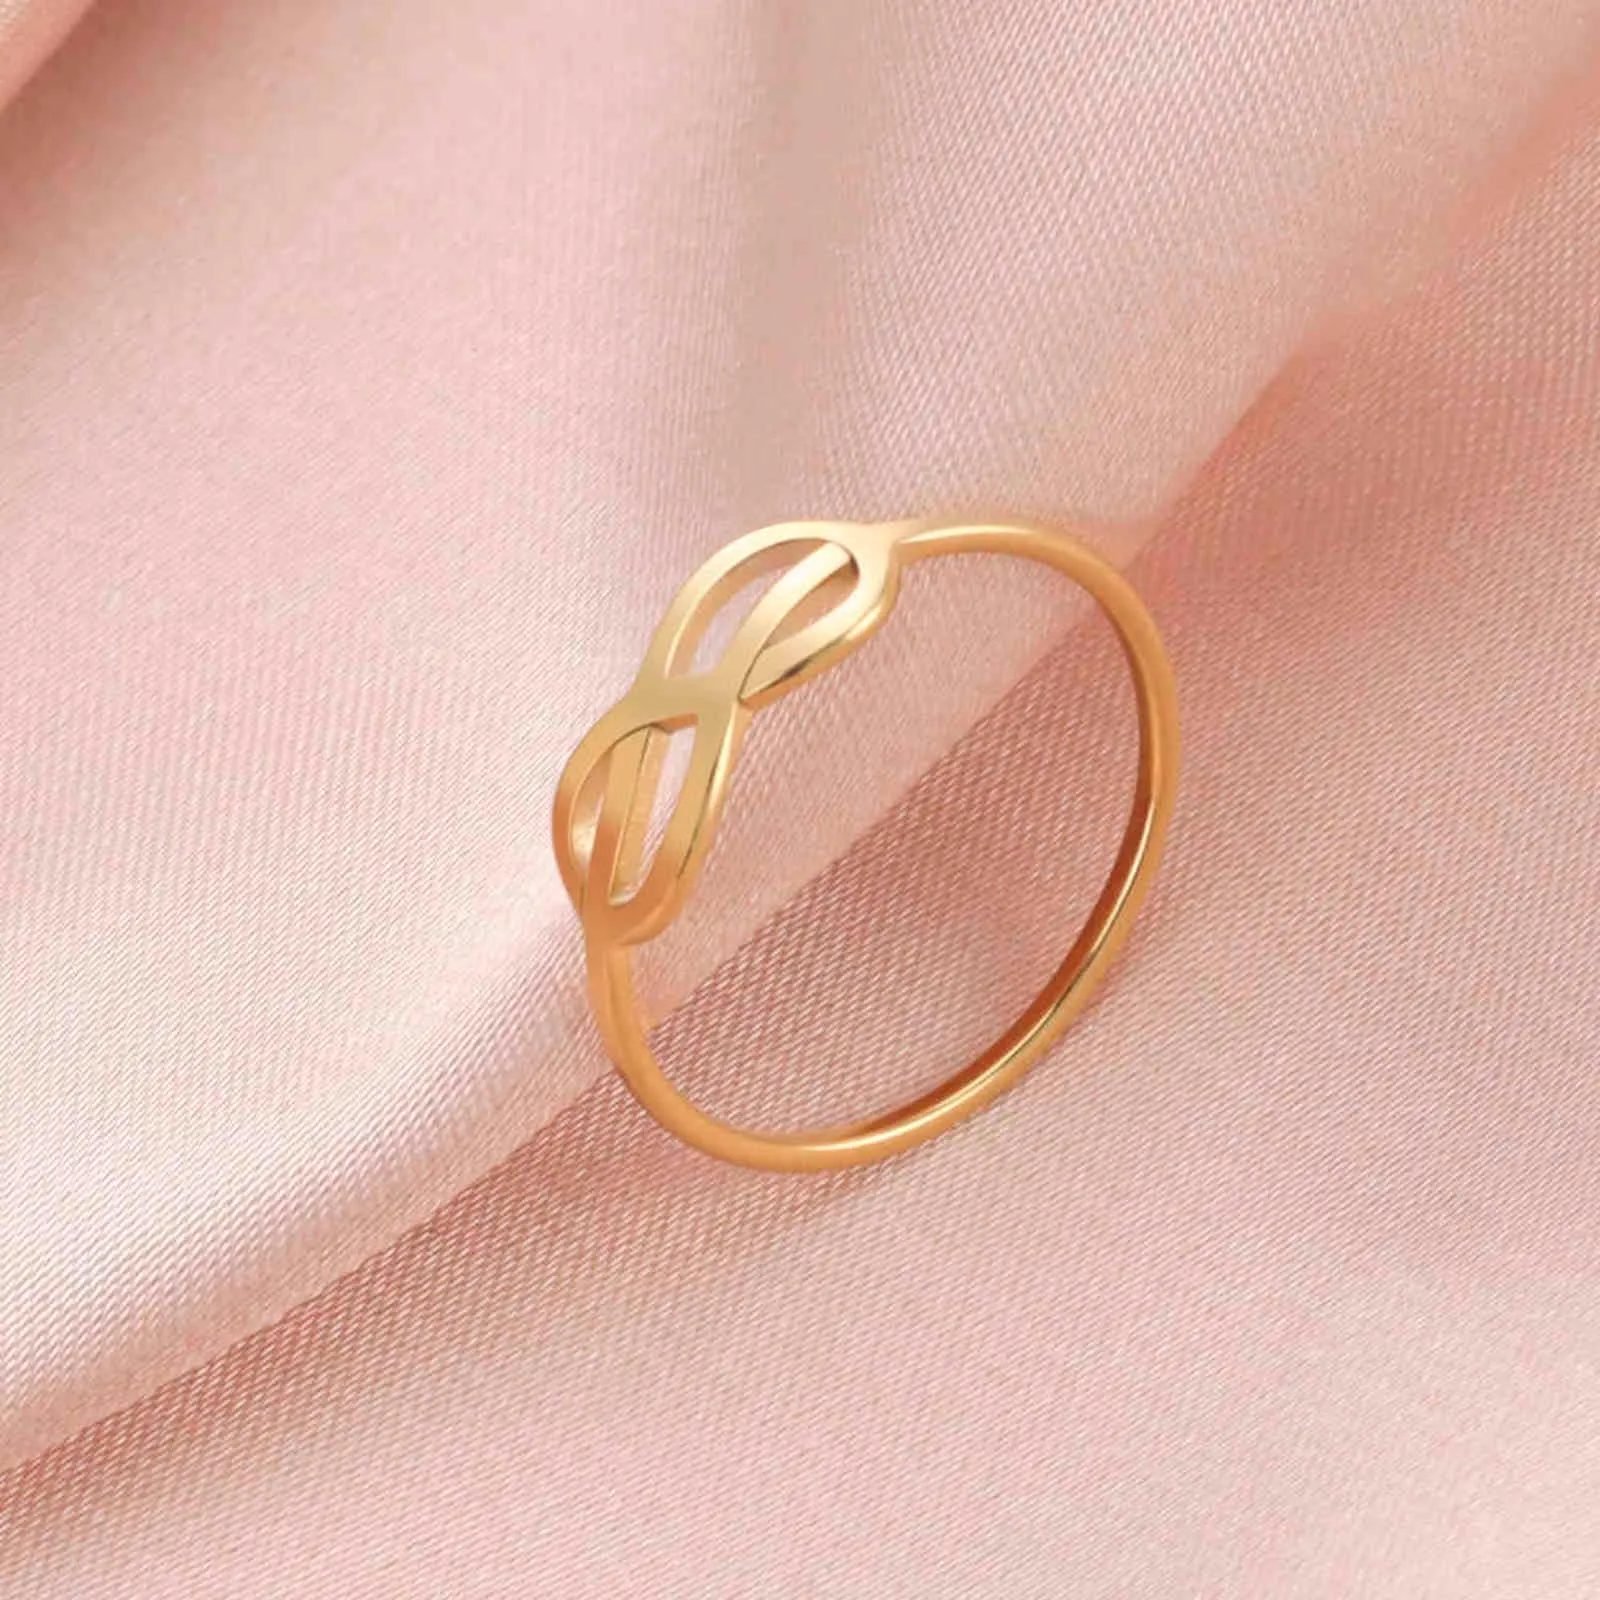 Lucktune Infinite Love Anelli donna Uomo Acciaio inossidabile Nastro Colore oro Semplice ed elegante Anello Gioielli fidanzamento matrimonio G1125